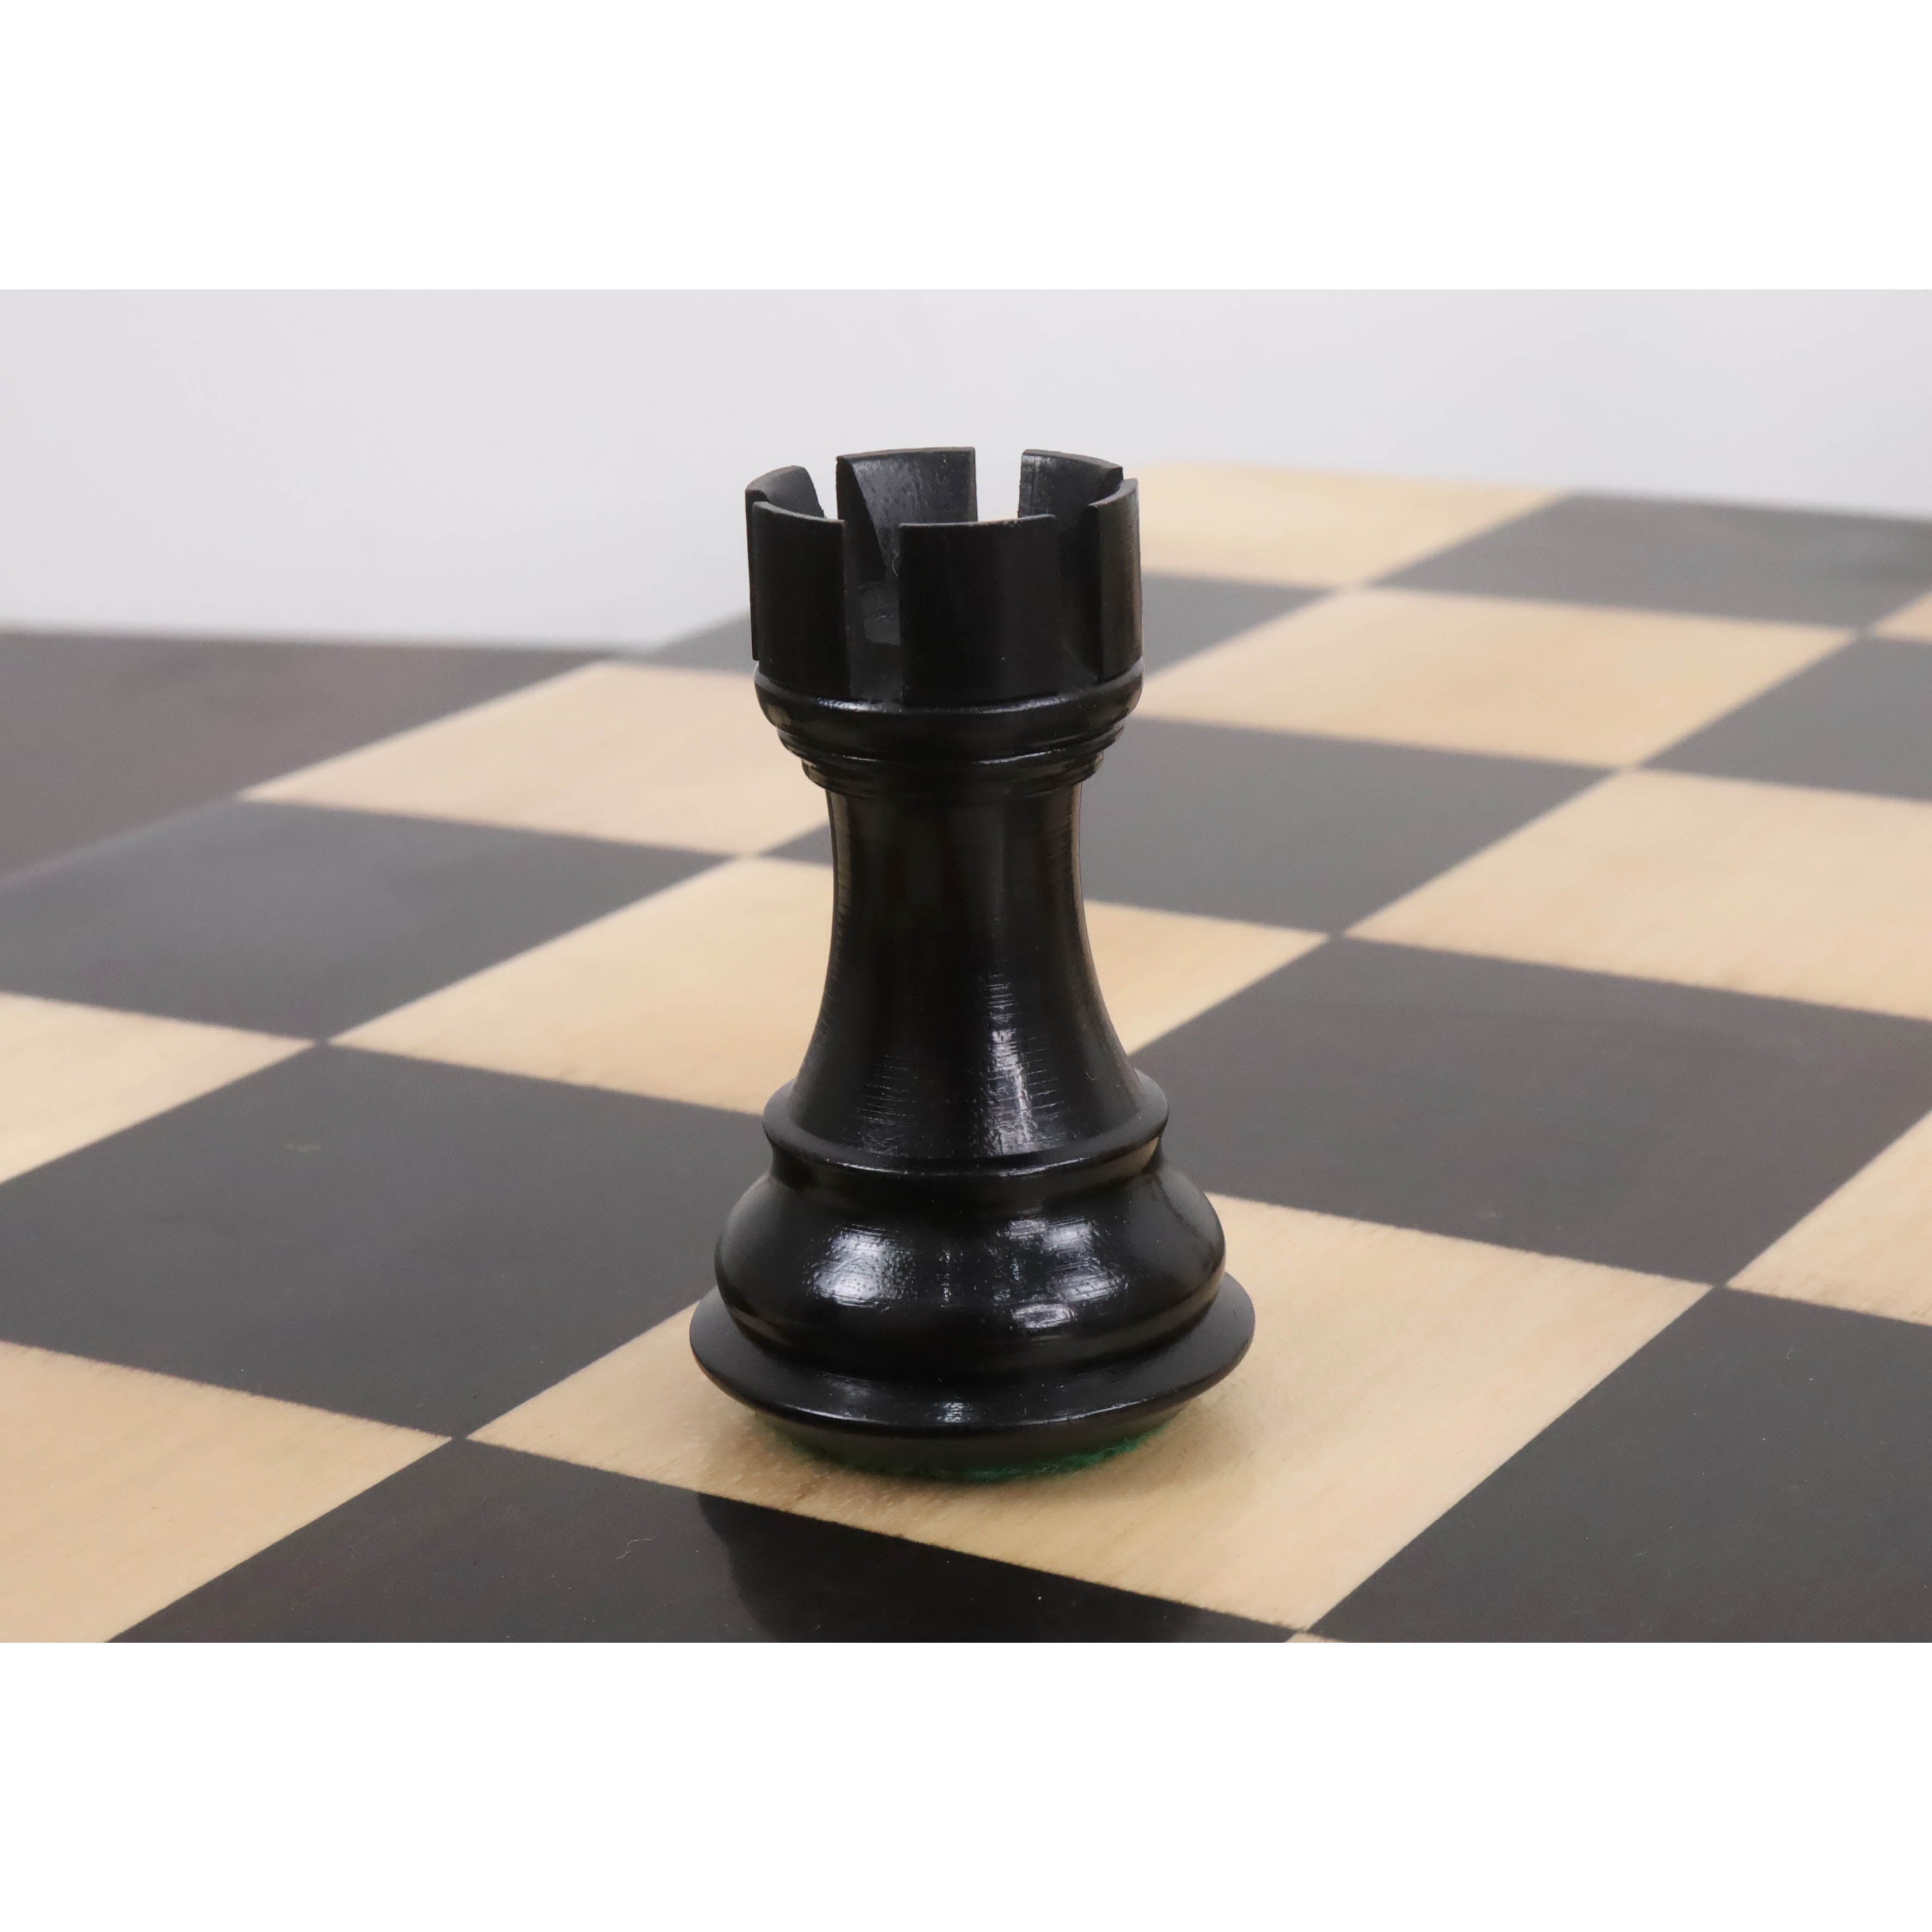 4" Bridle Staunton Luxury Chess Pieces Only set - Ebony Wood & Boxwood